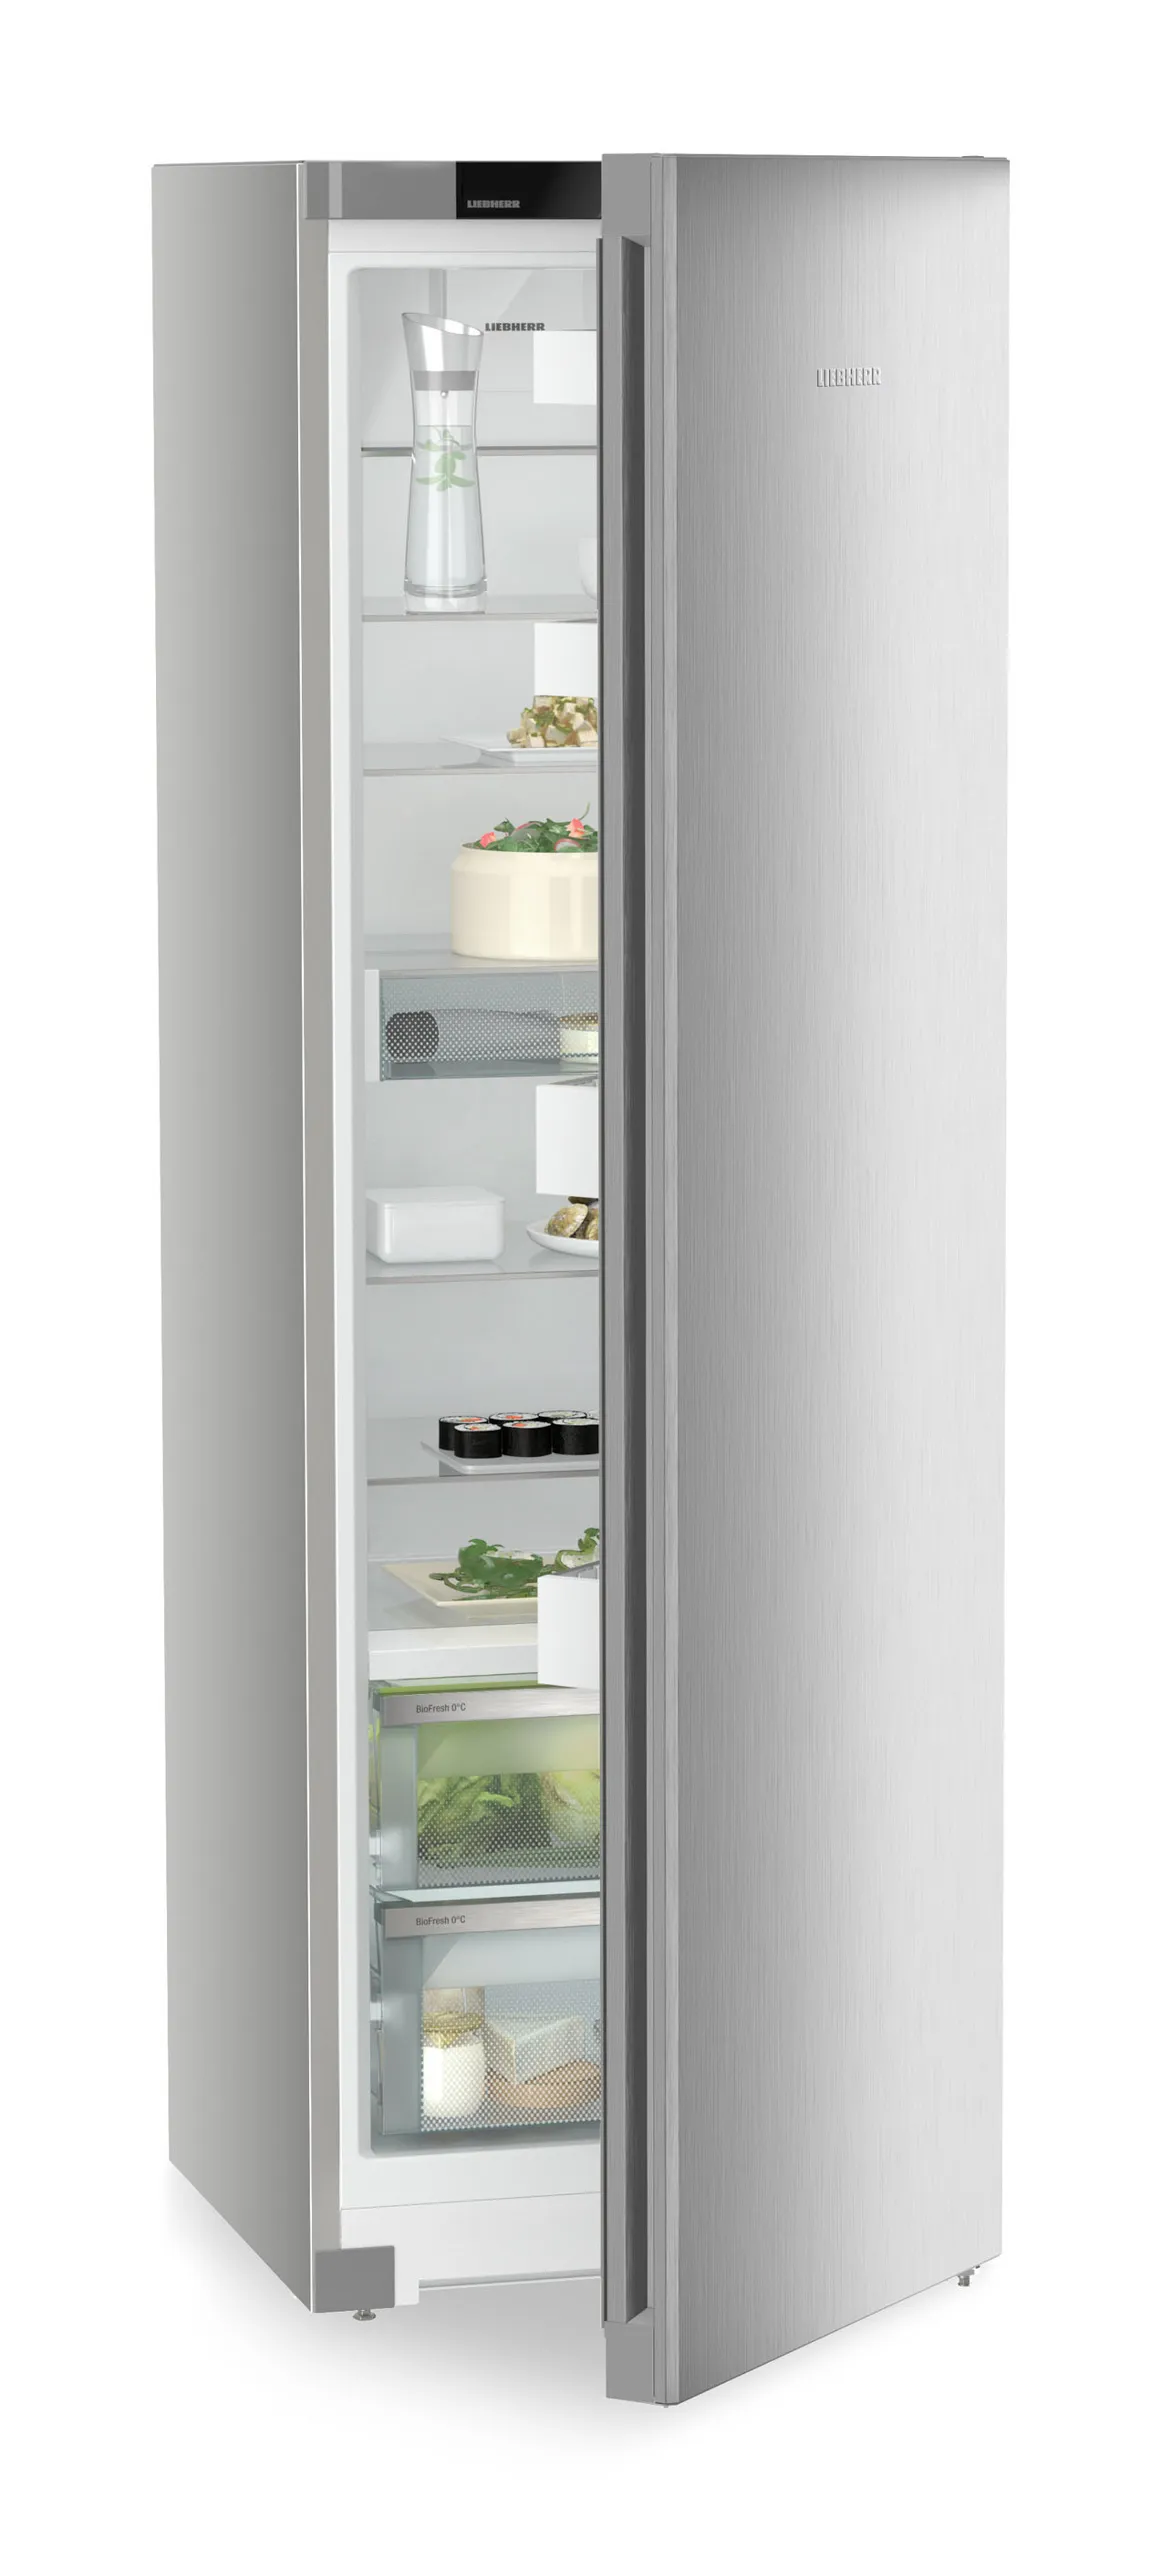 Single door refrigerator 60 cm RBsfe 5220 Liebherr